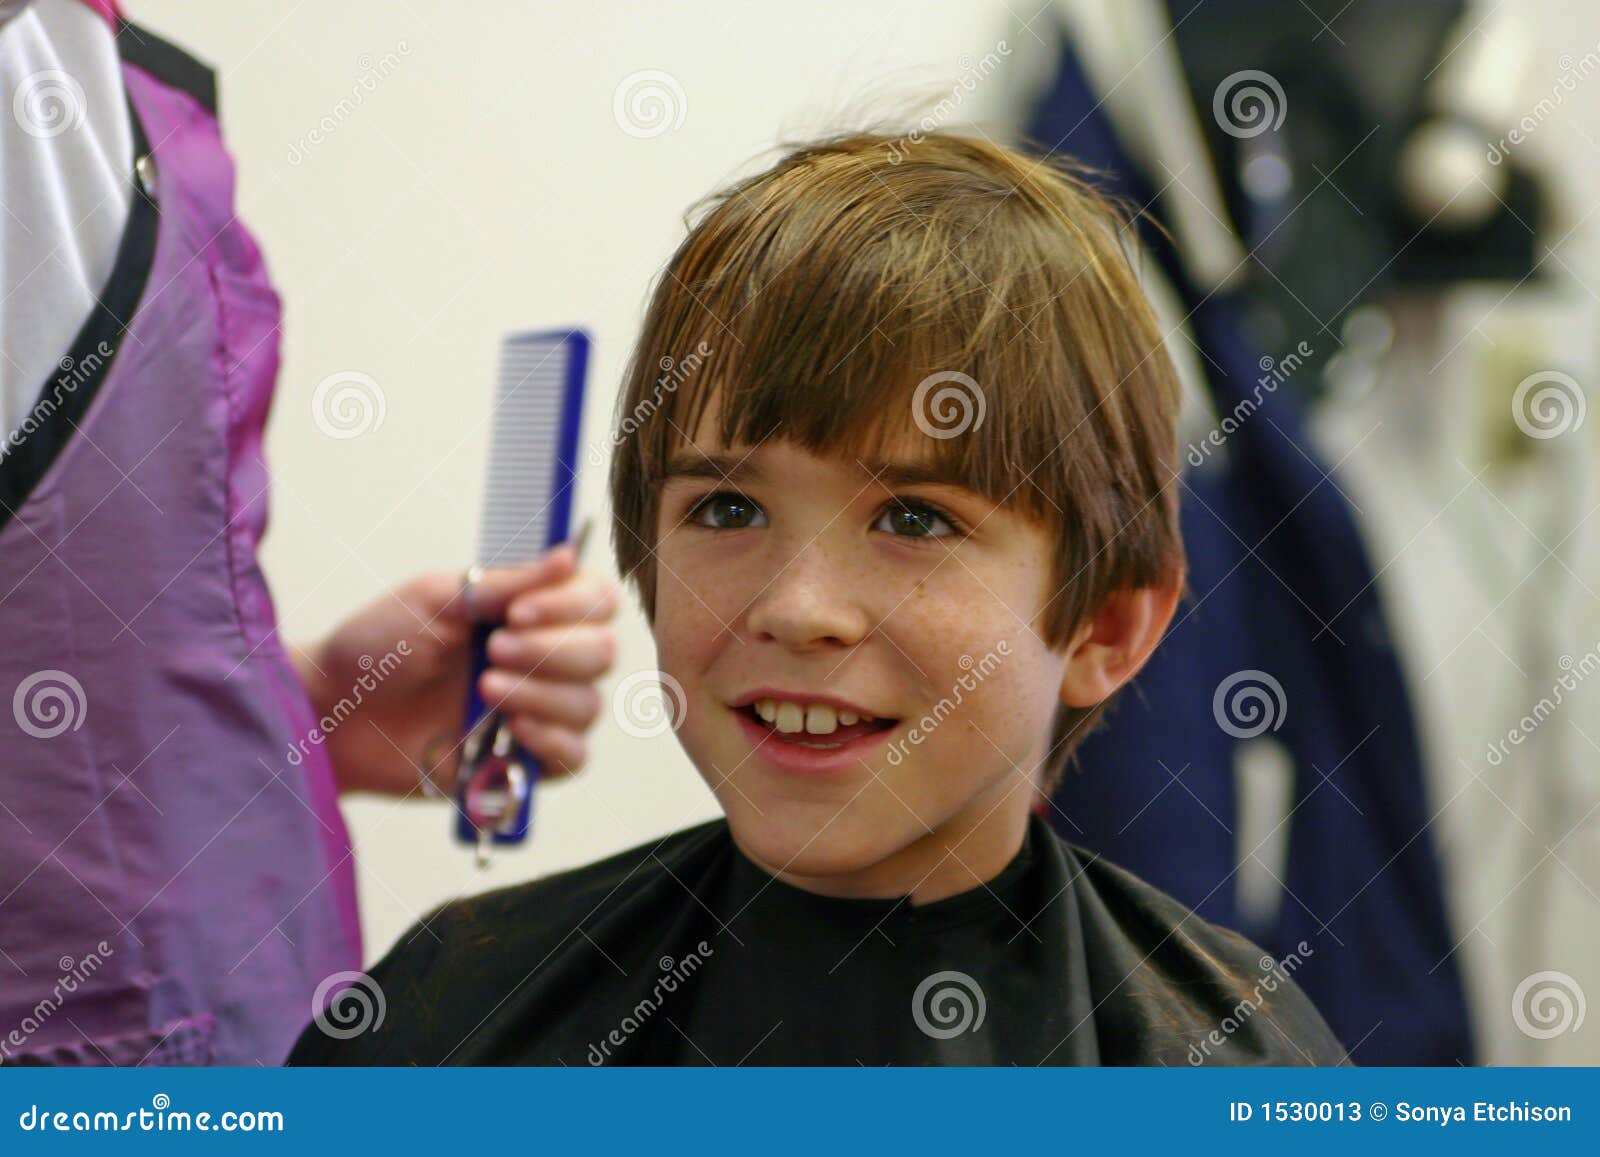 Corte de cabelo infantil: 30 ideias estilosas para meninos